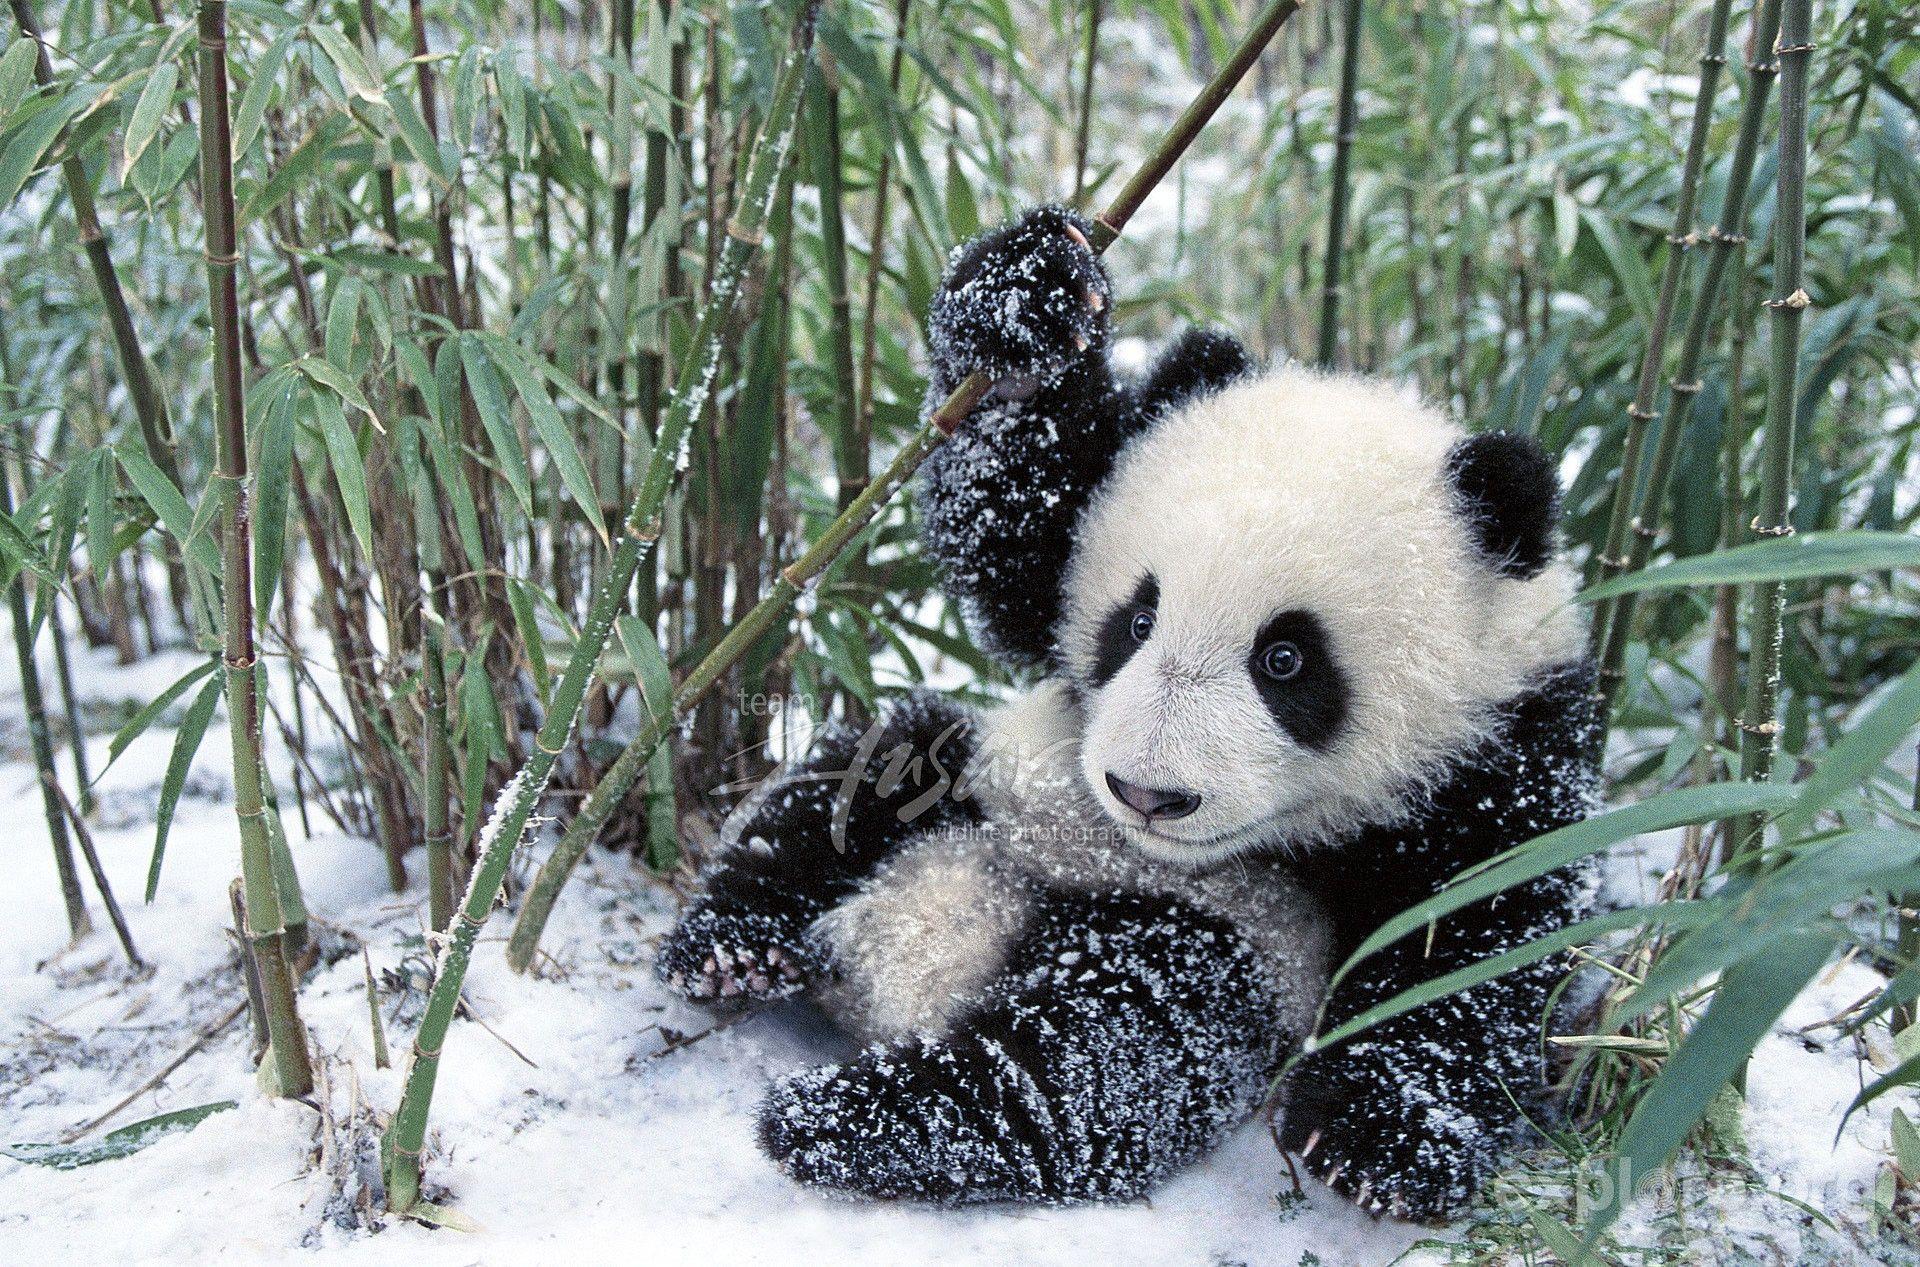 Panda Cubs in Snow